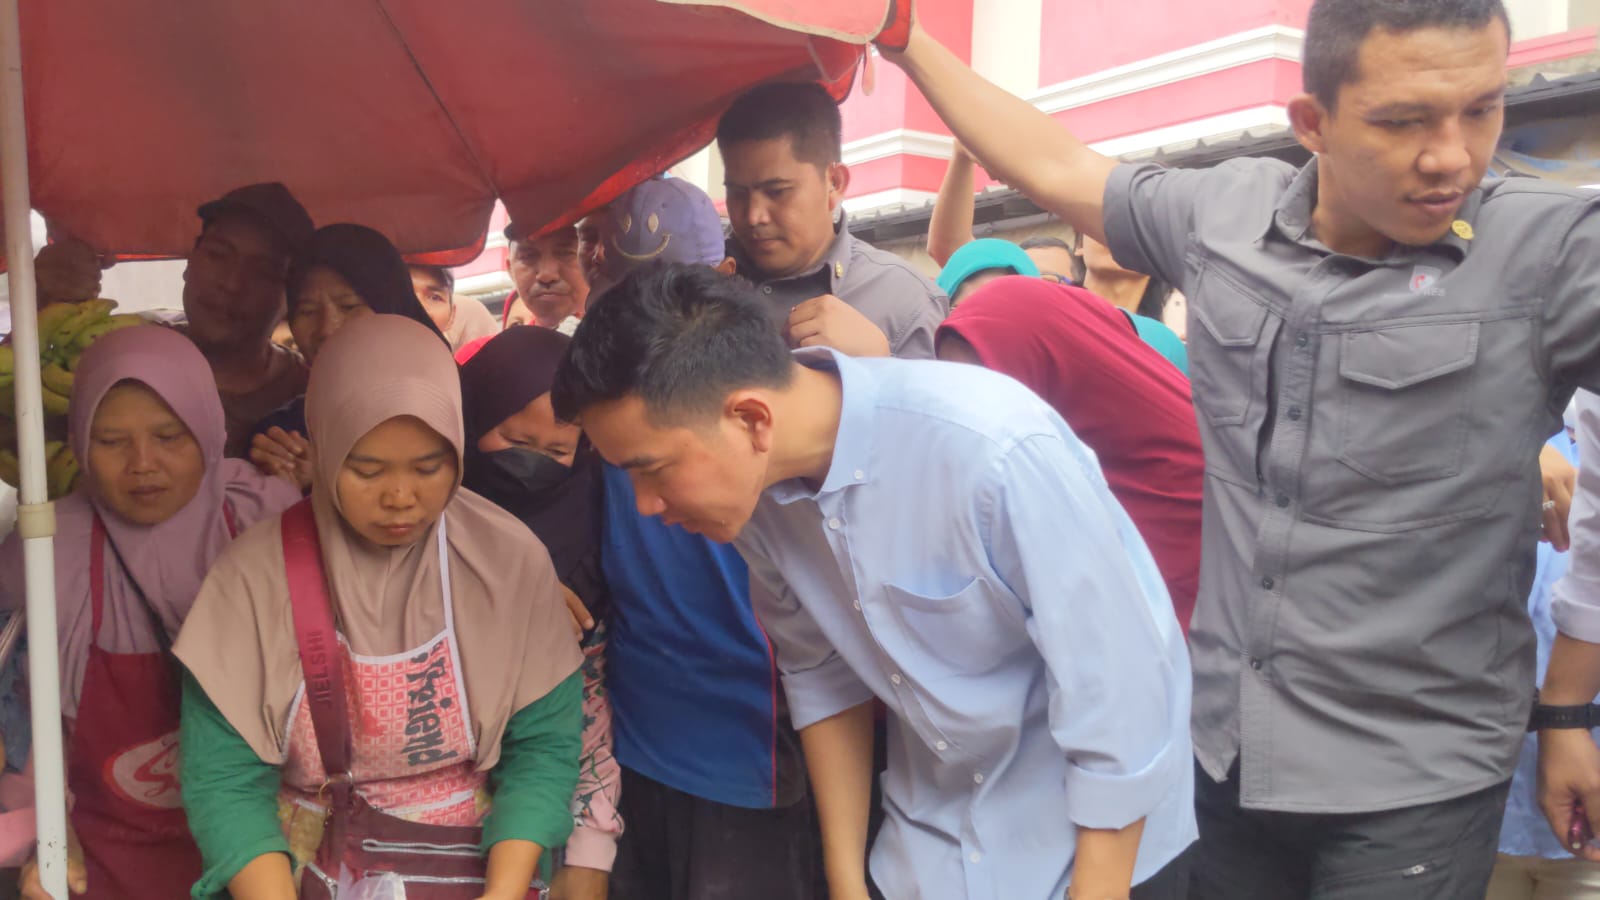 Datang ke Lampung Gibran Rakabuming Raka Diminta Borong Cabai dan Tahu oleh Pedagang